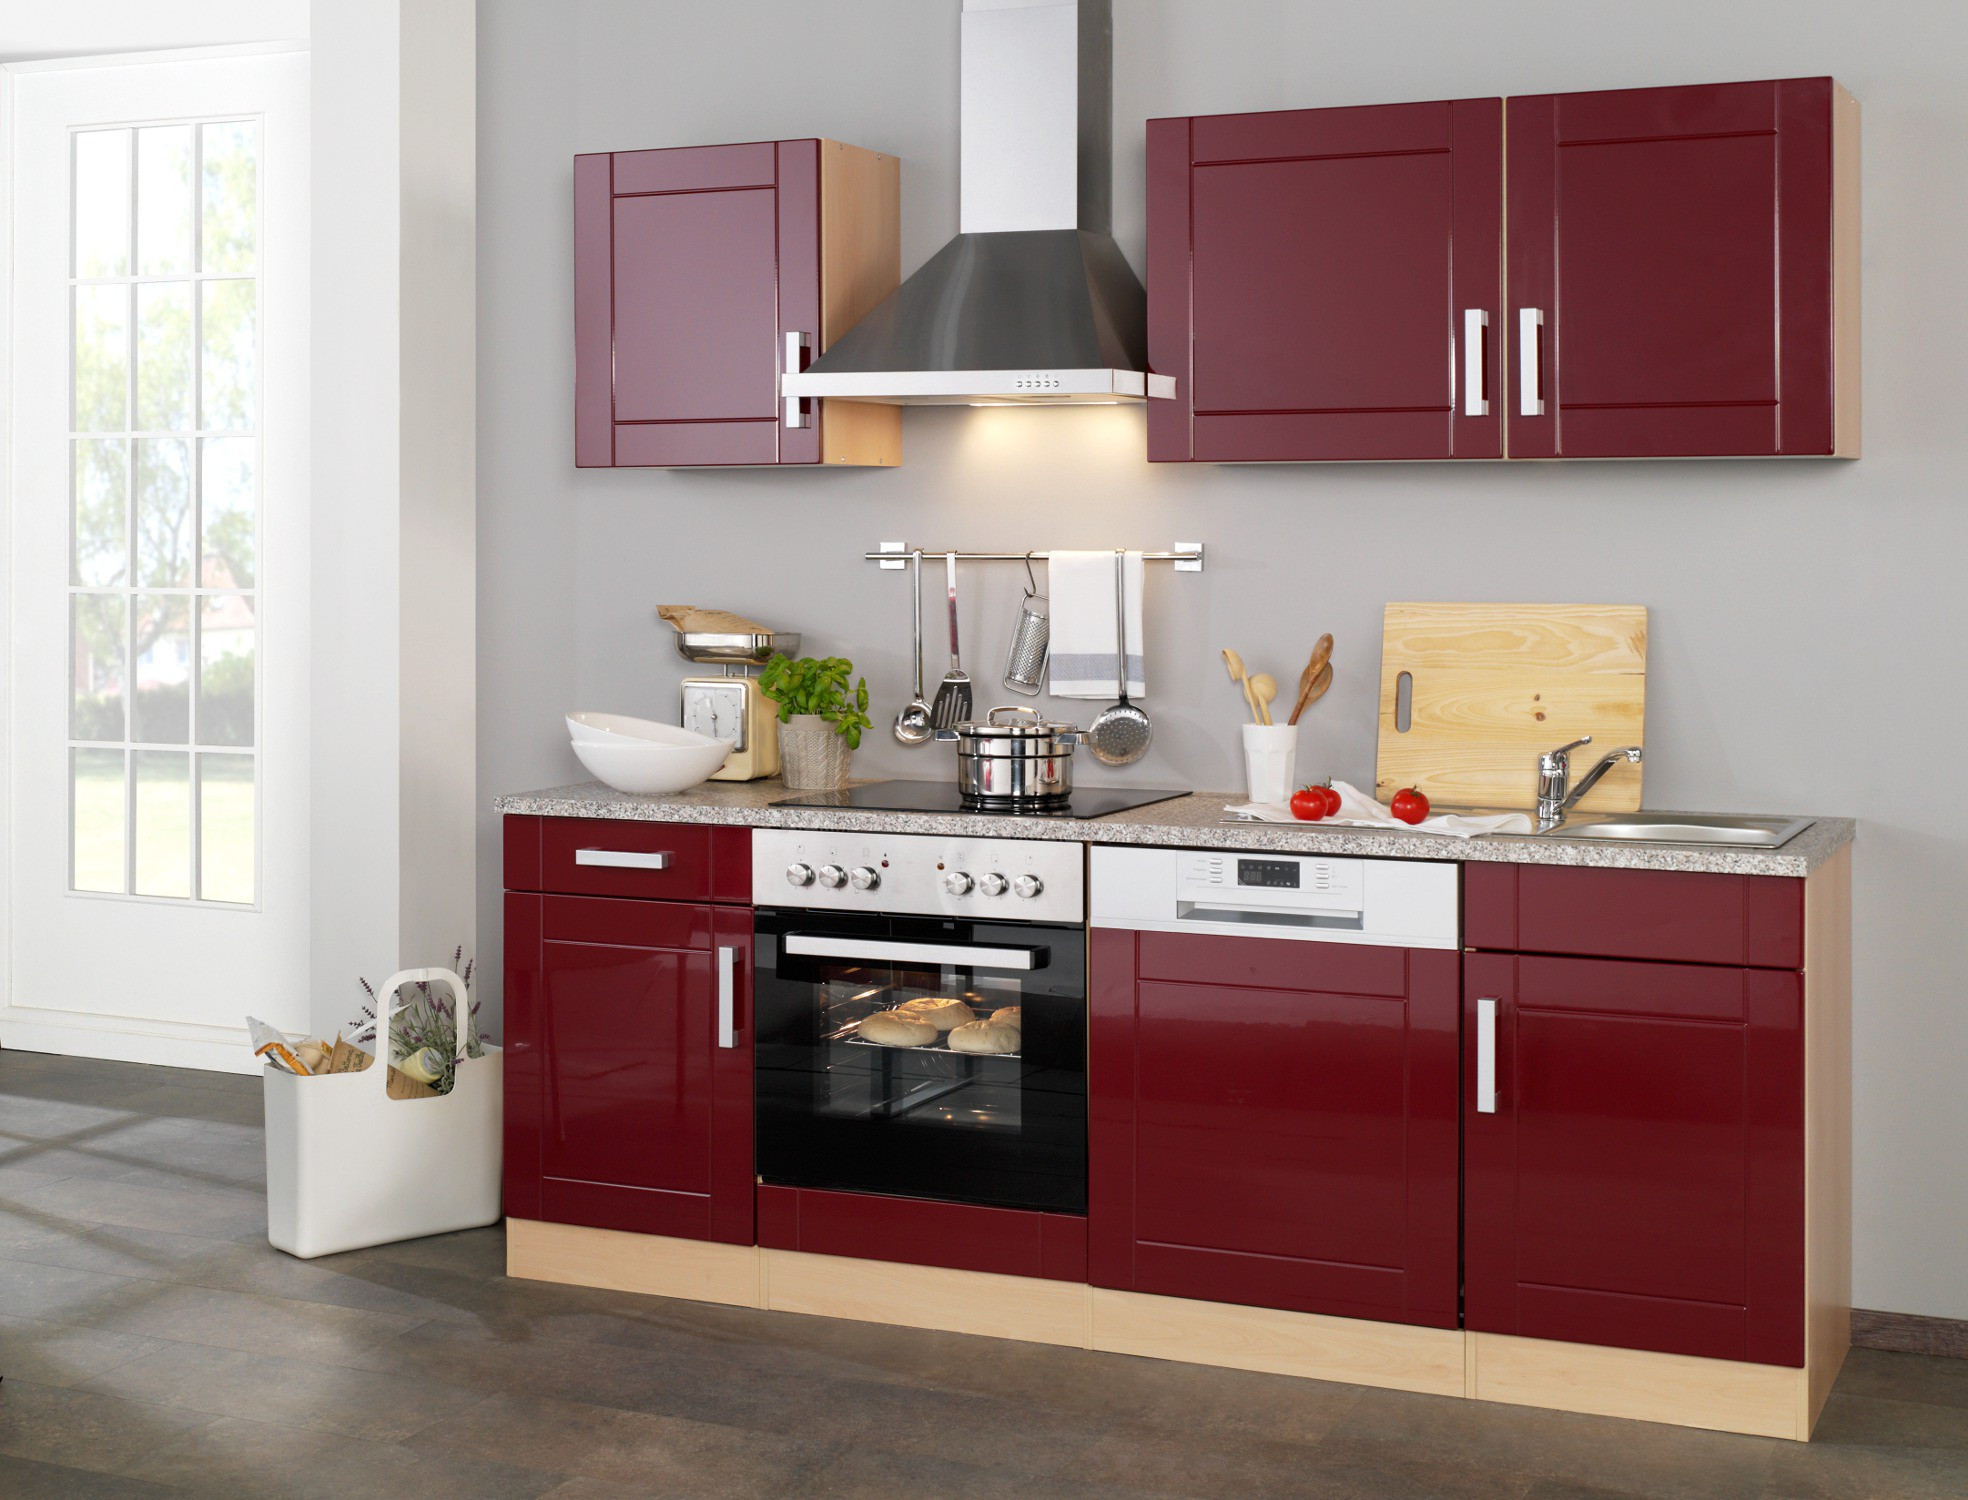 Küchenzeile Mit E Geräten Günstig
 Küchenzeile VAREL Küche mit E Geräten Breite 220 cm